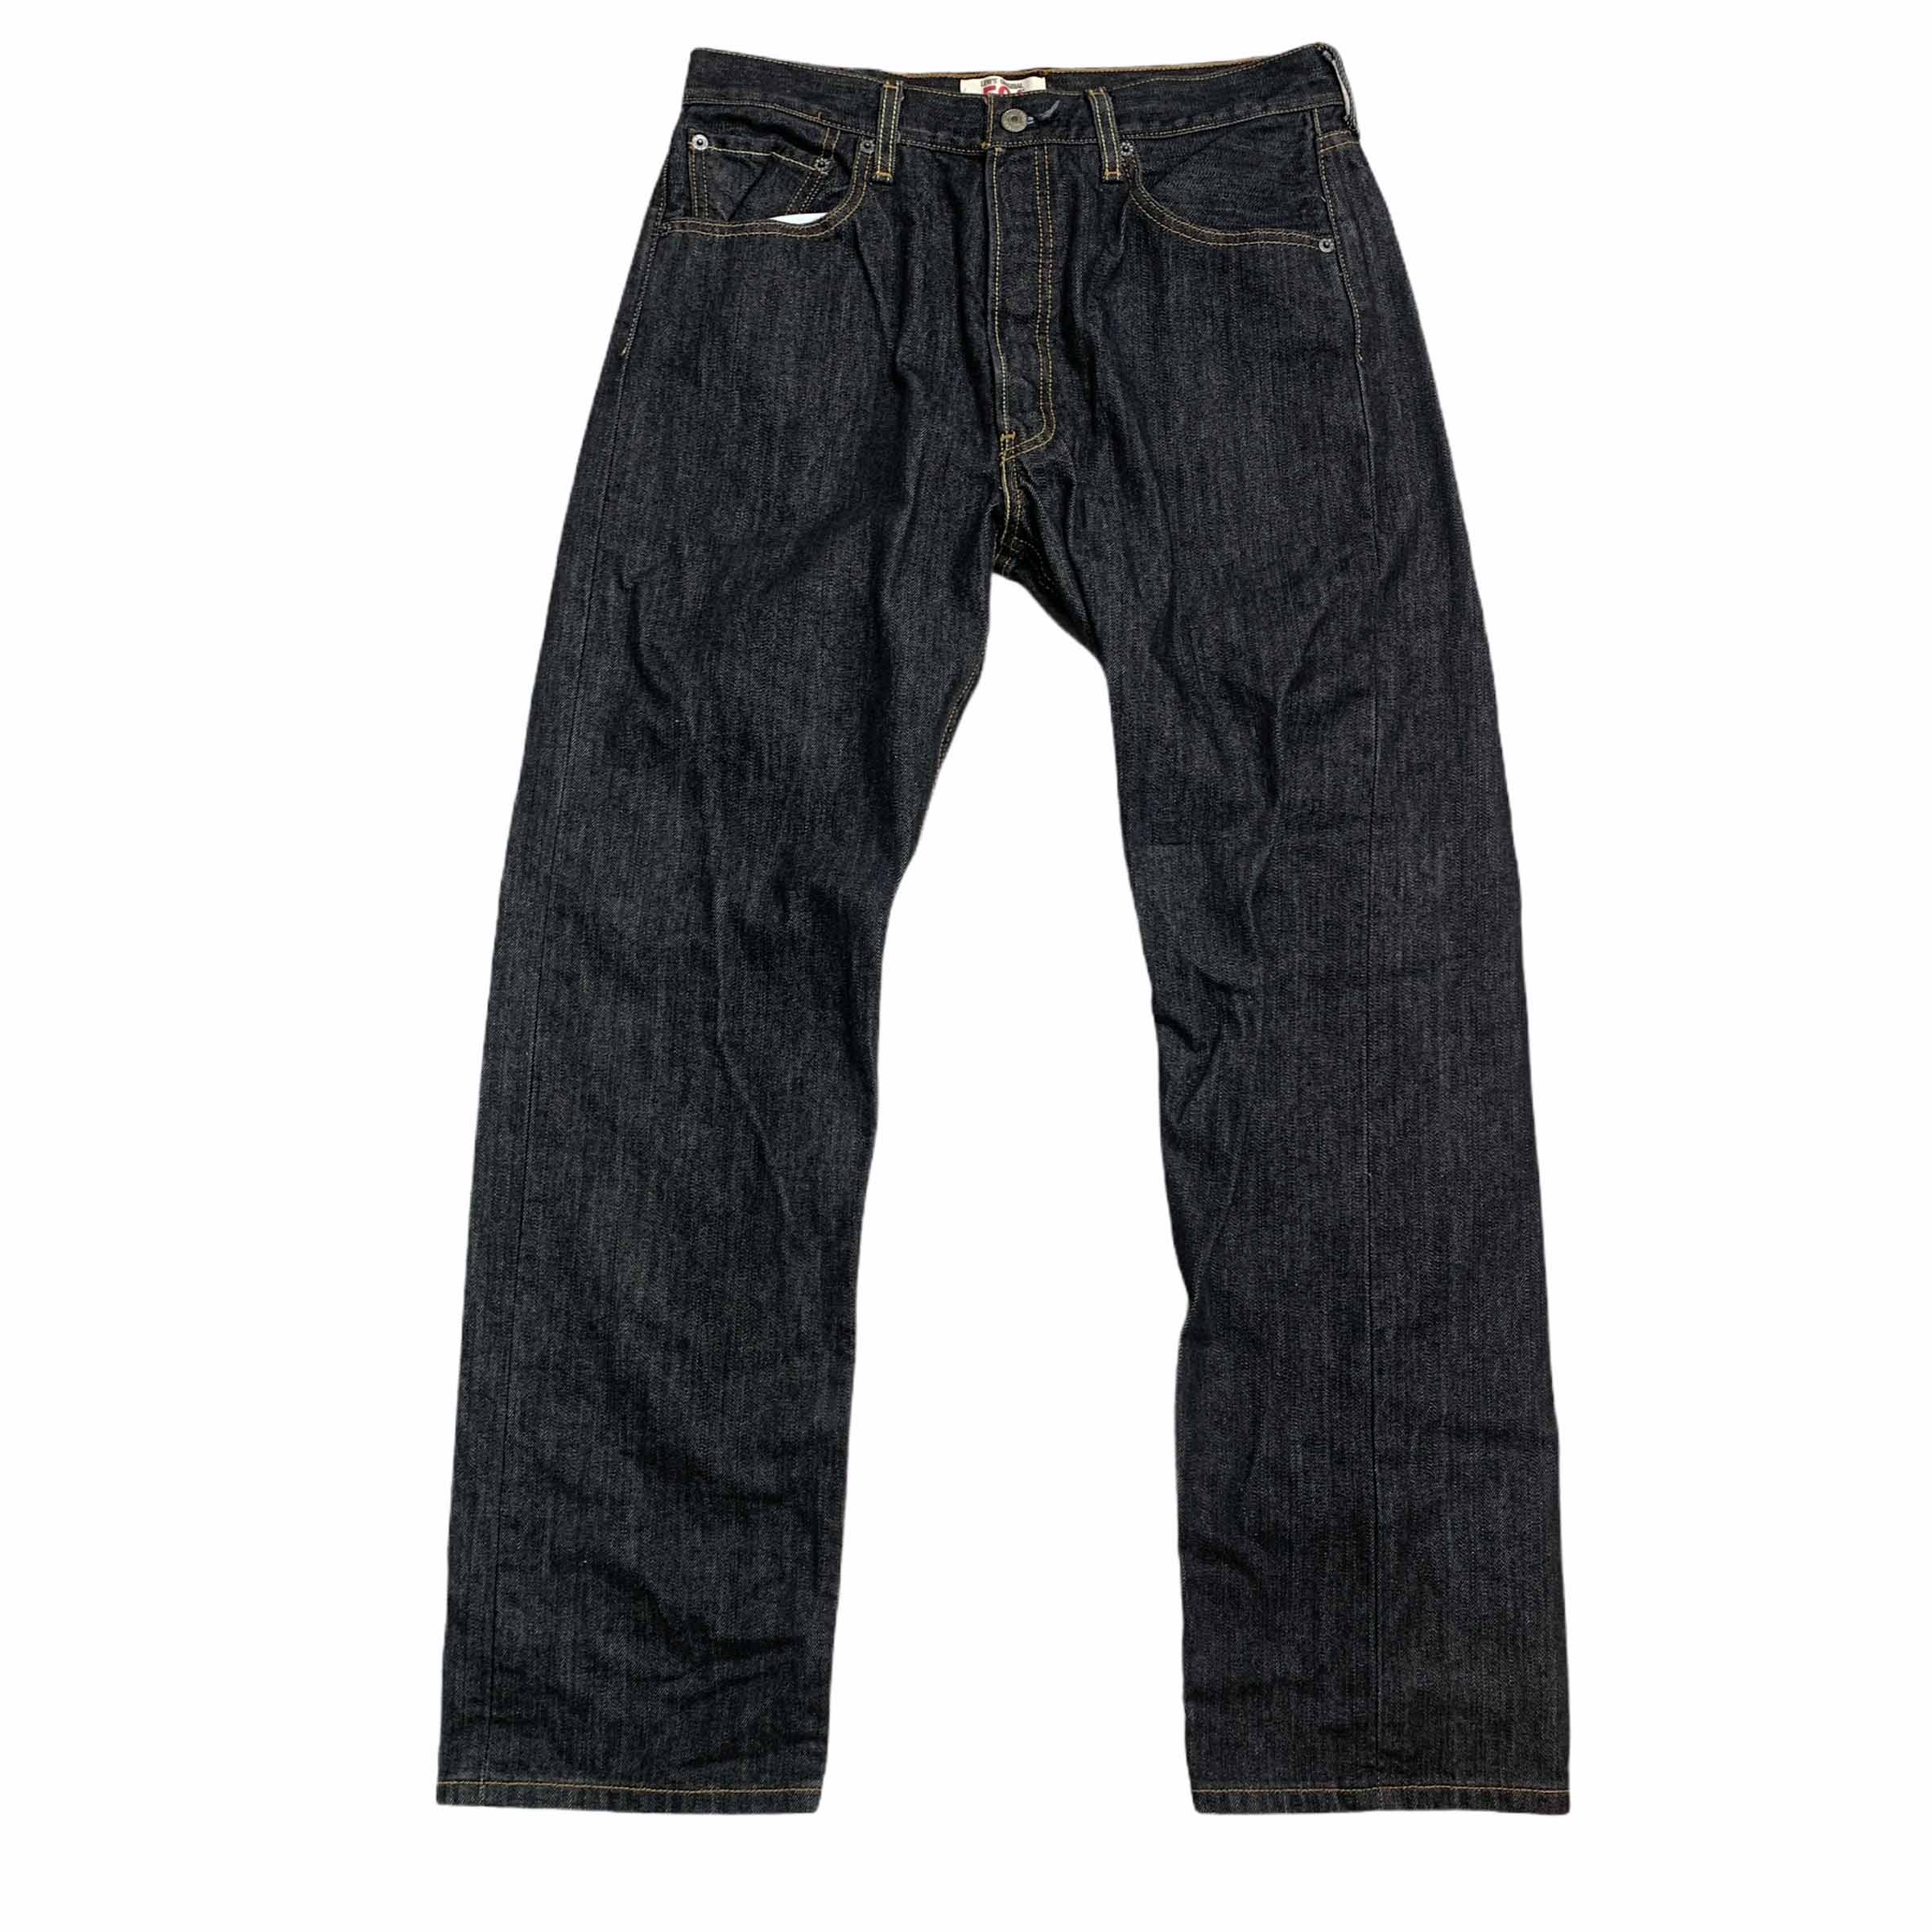 [Levis] (Vintage) 501 Denim pants - Size 34/32